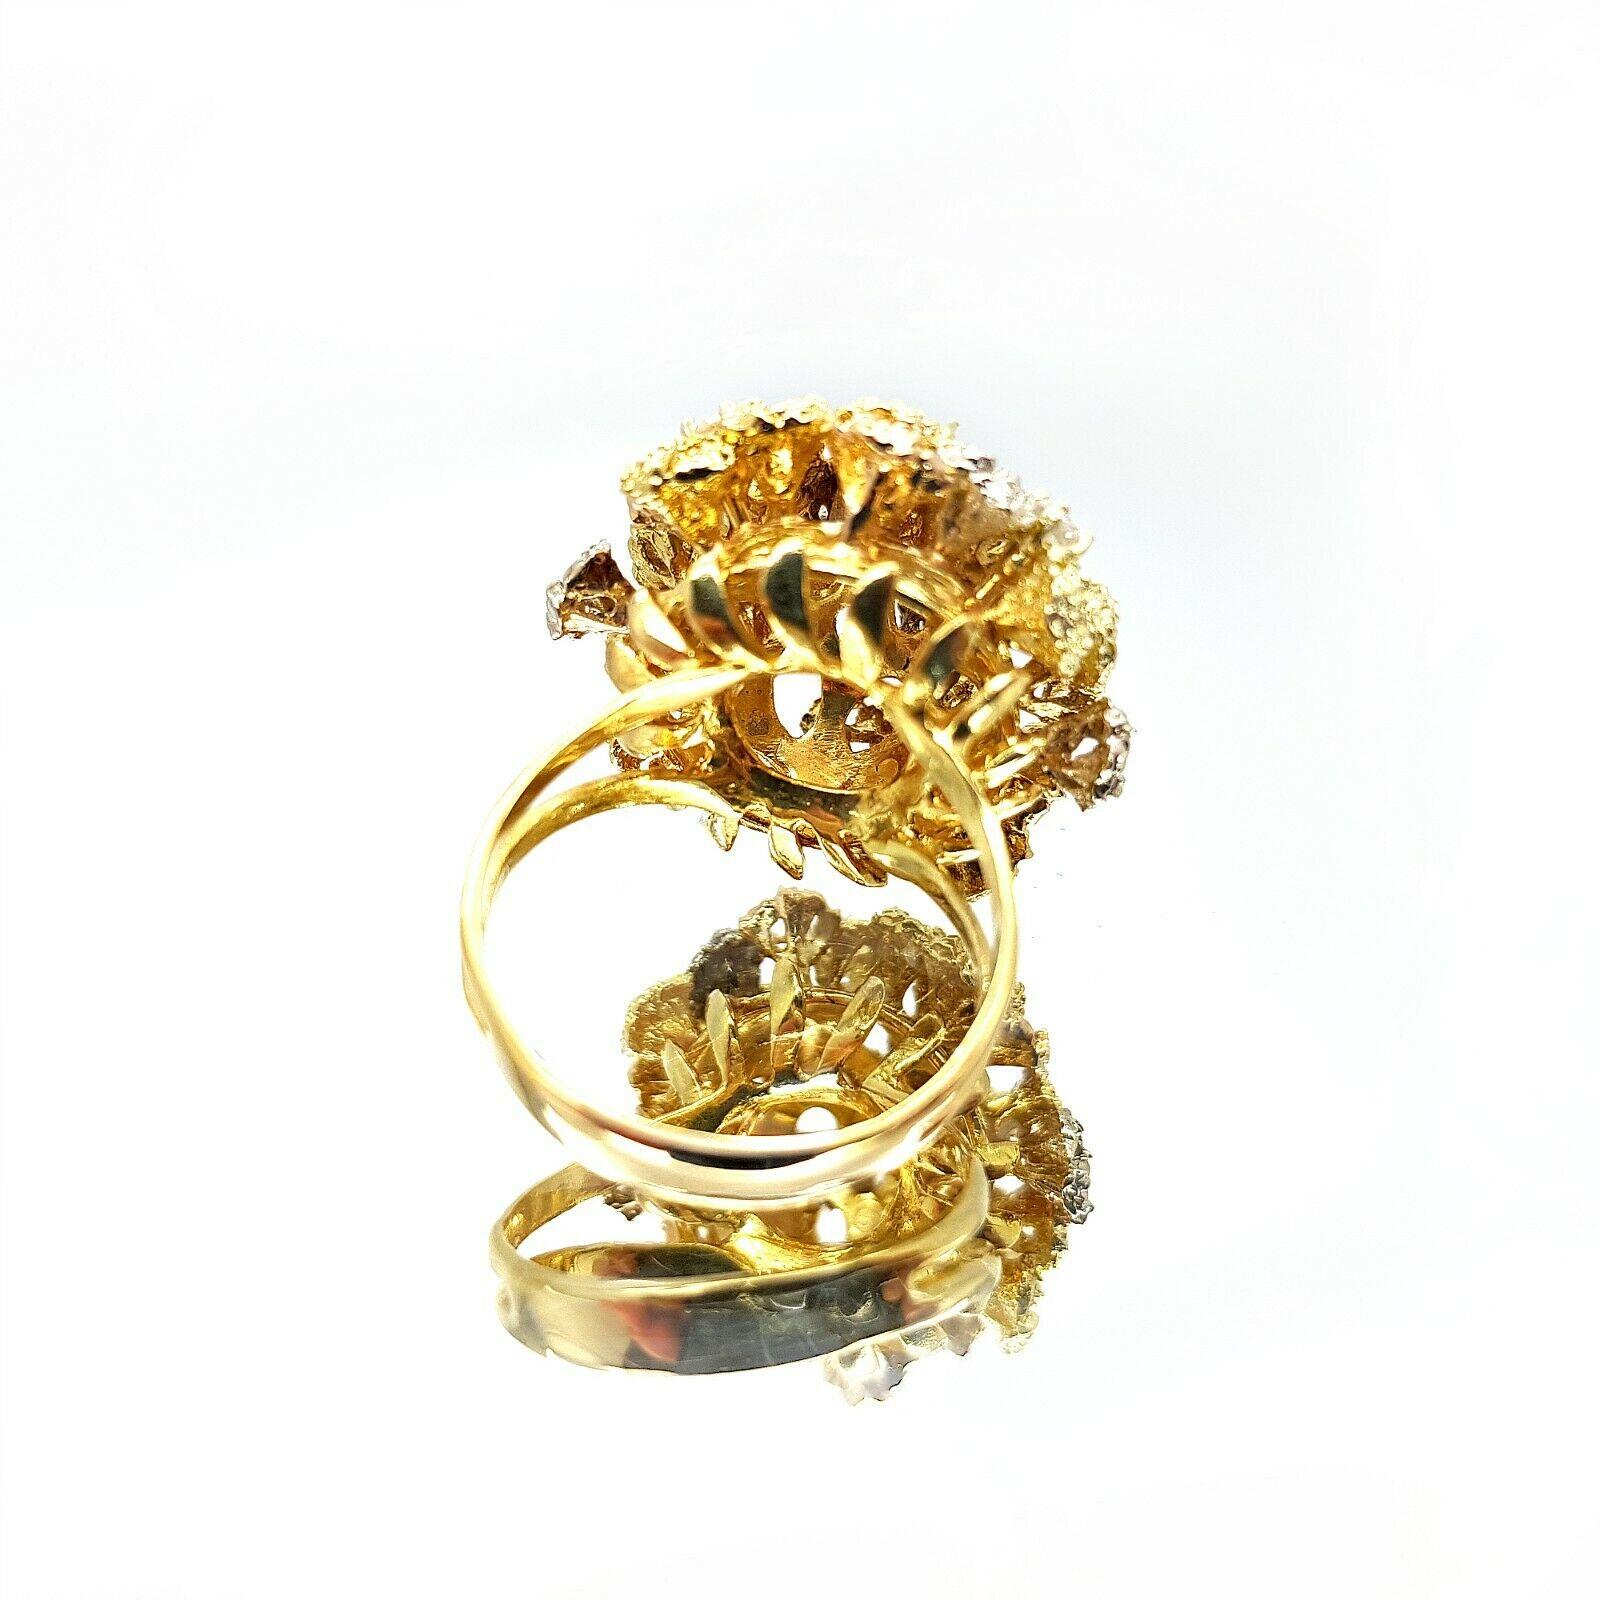  Dies ist eine schöne 18k Blumenstrauß Ring mit Diamanten, die eine etwa 0,40 Karat Gesamtgewicht hat, aber es kann die Größe angepasst werden, um jeden Finger passen. 
Spezifikationen:
    Hauptstein:DIAMONEN
    Diamanten: 10PCS
    Karat